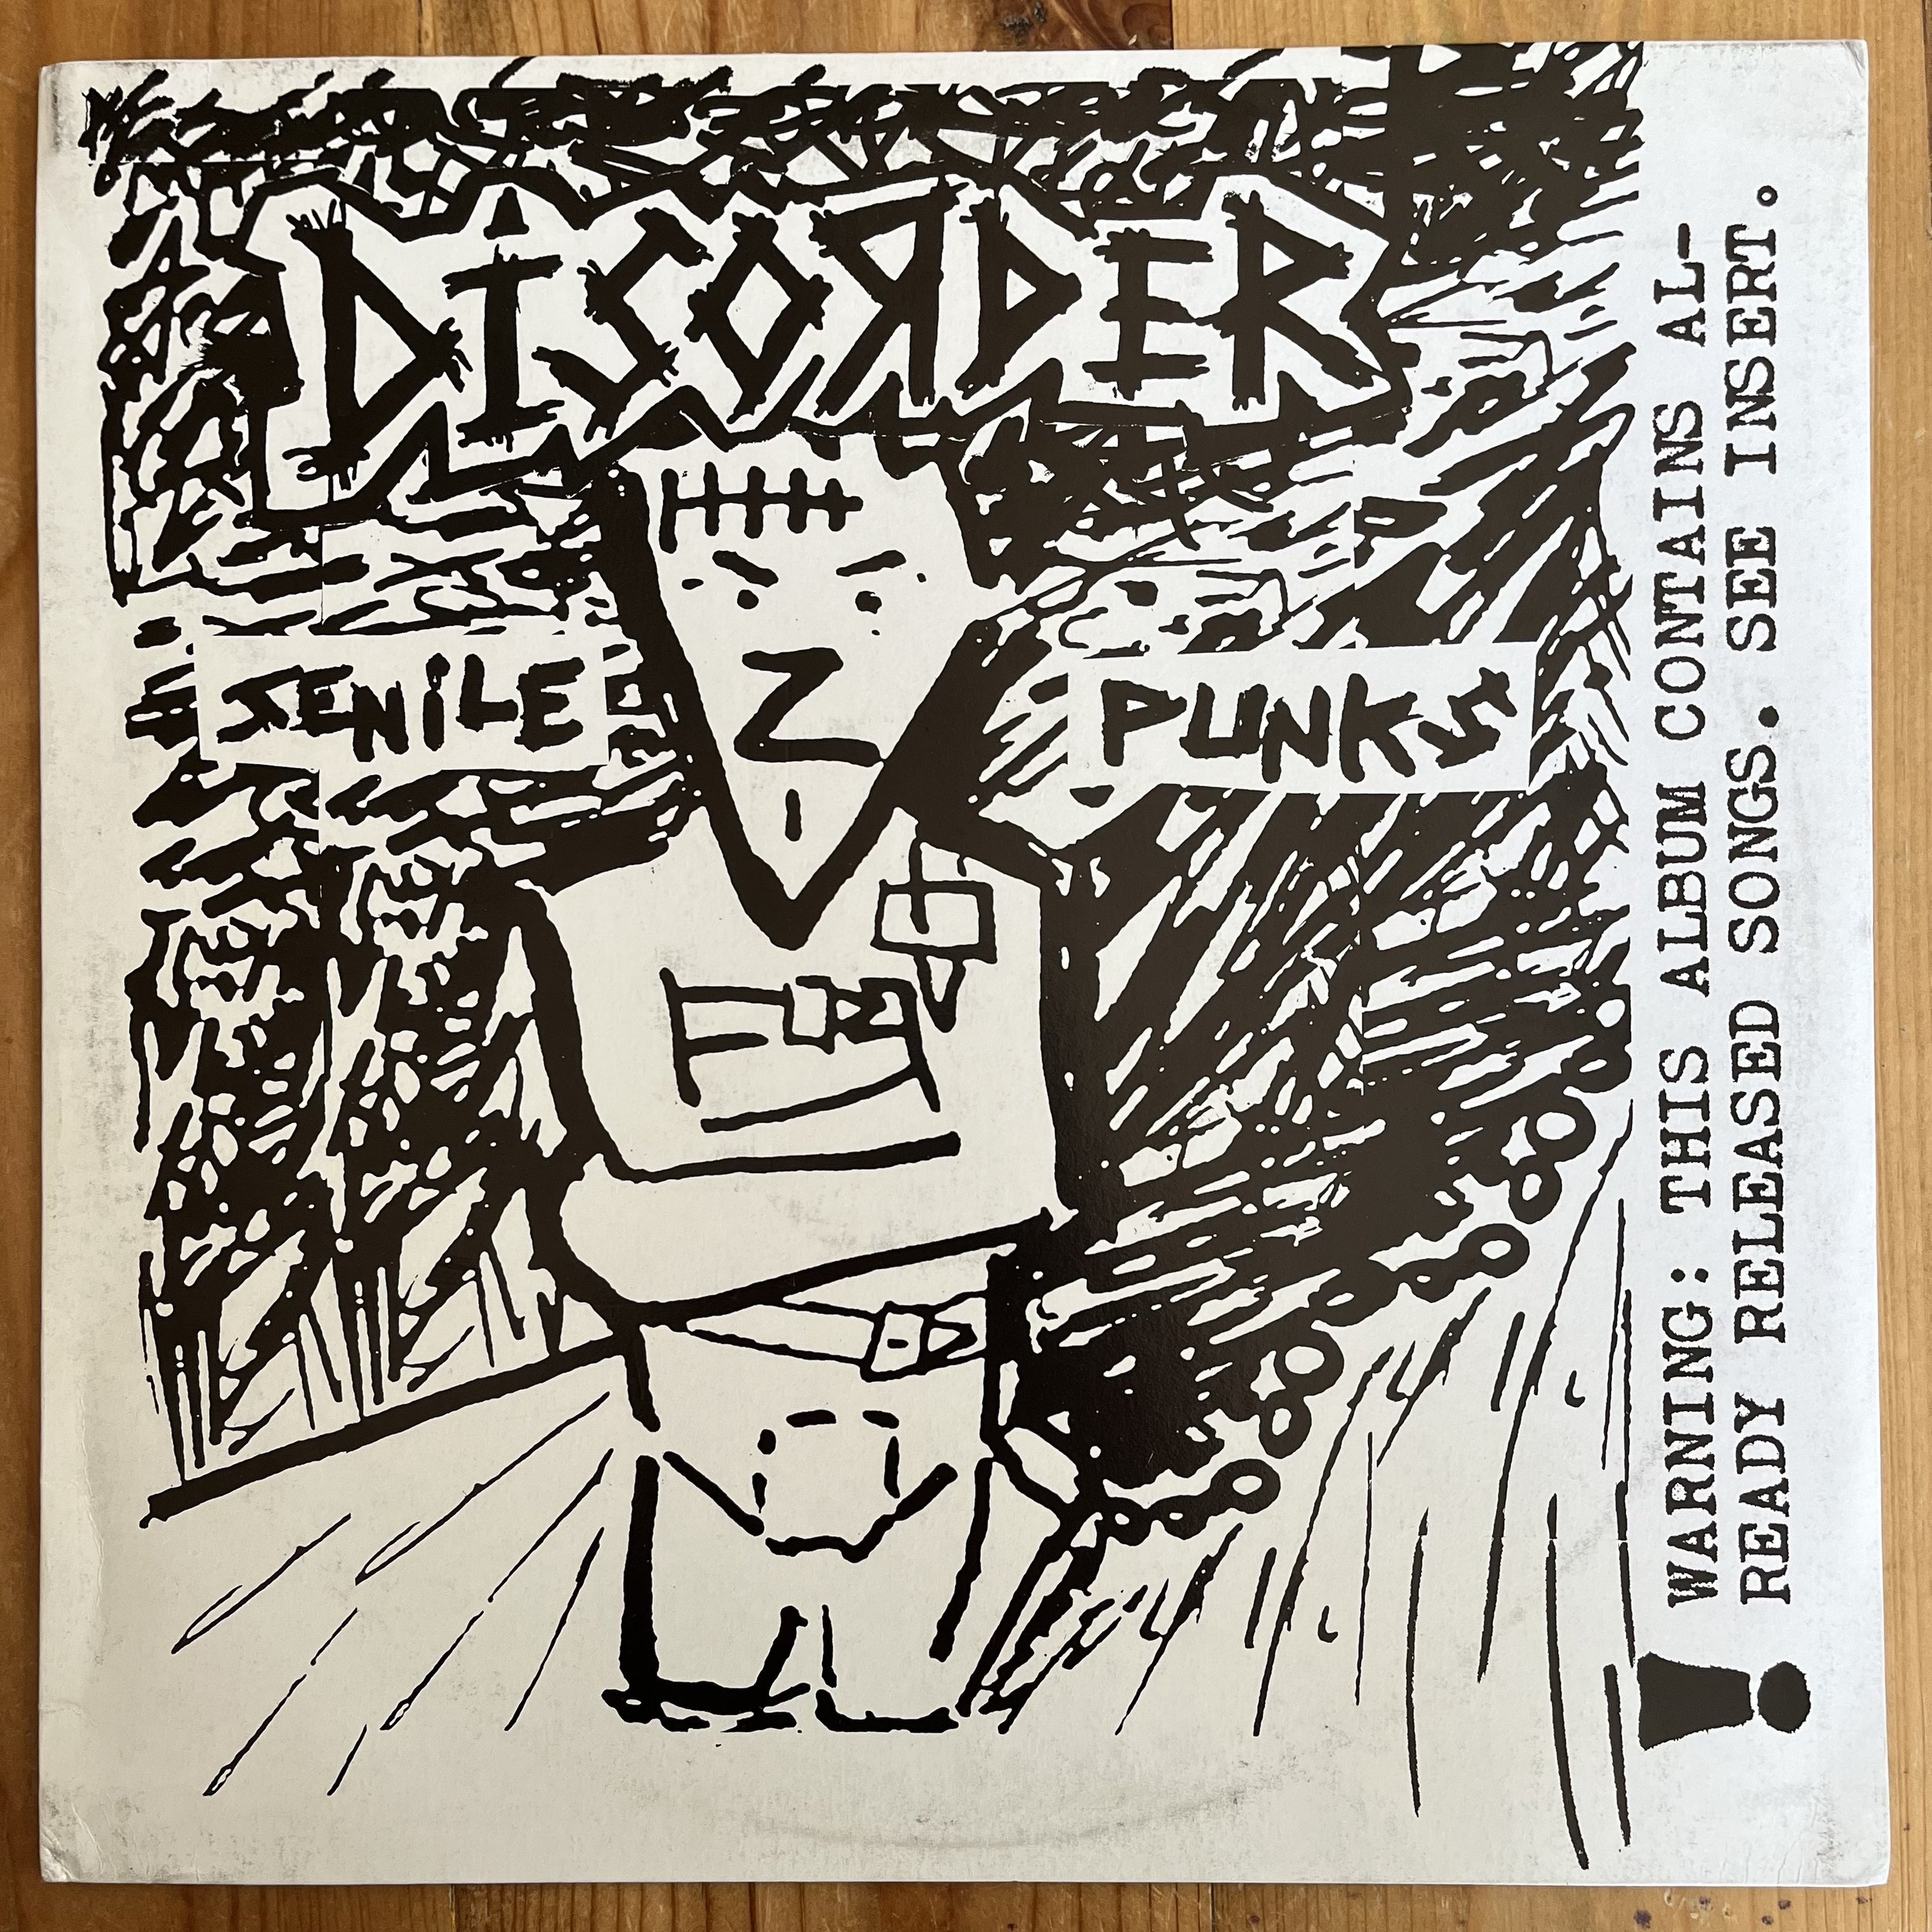 Disorder - Senile Punks LP - cover front.jpeg